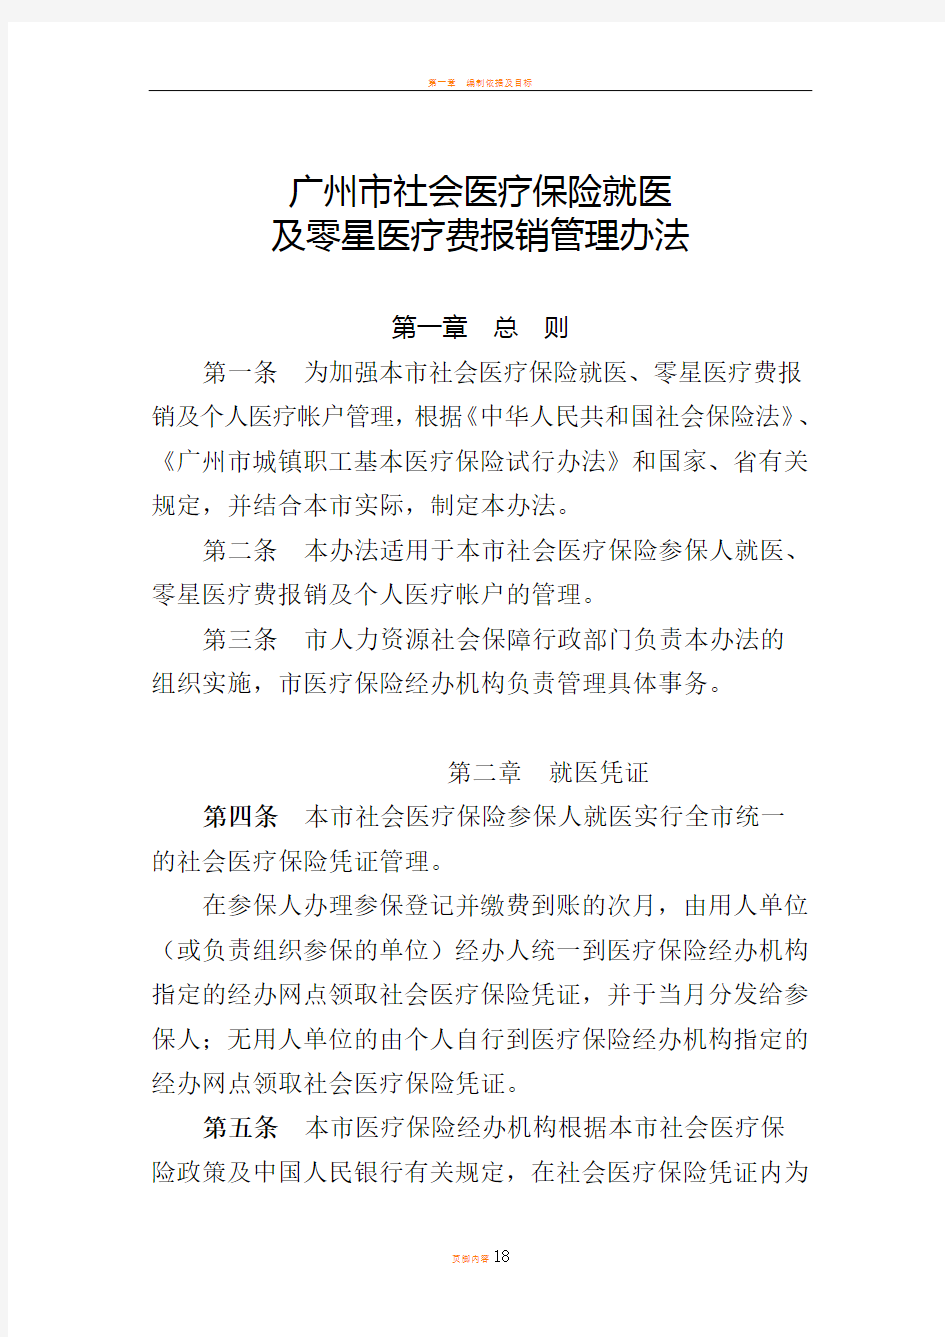 广州市社会医疗保险就医及零星医疗费报销管理办法